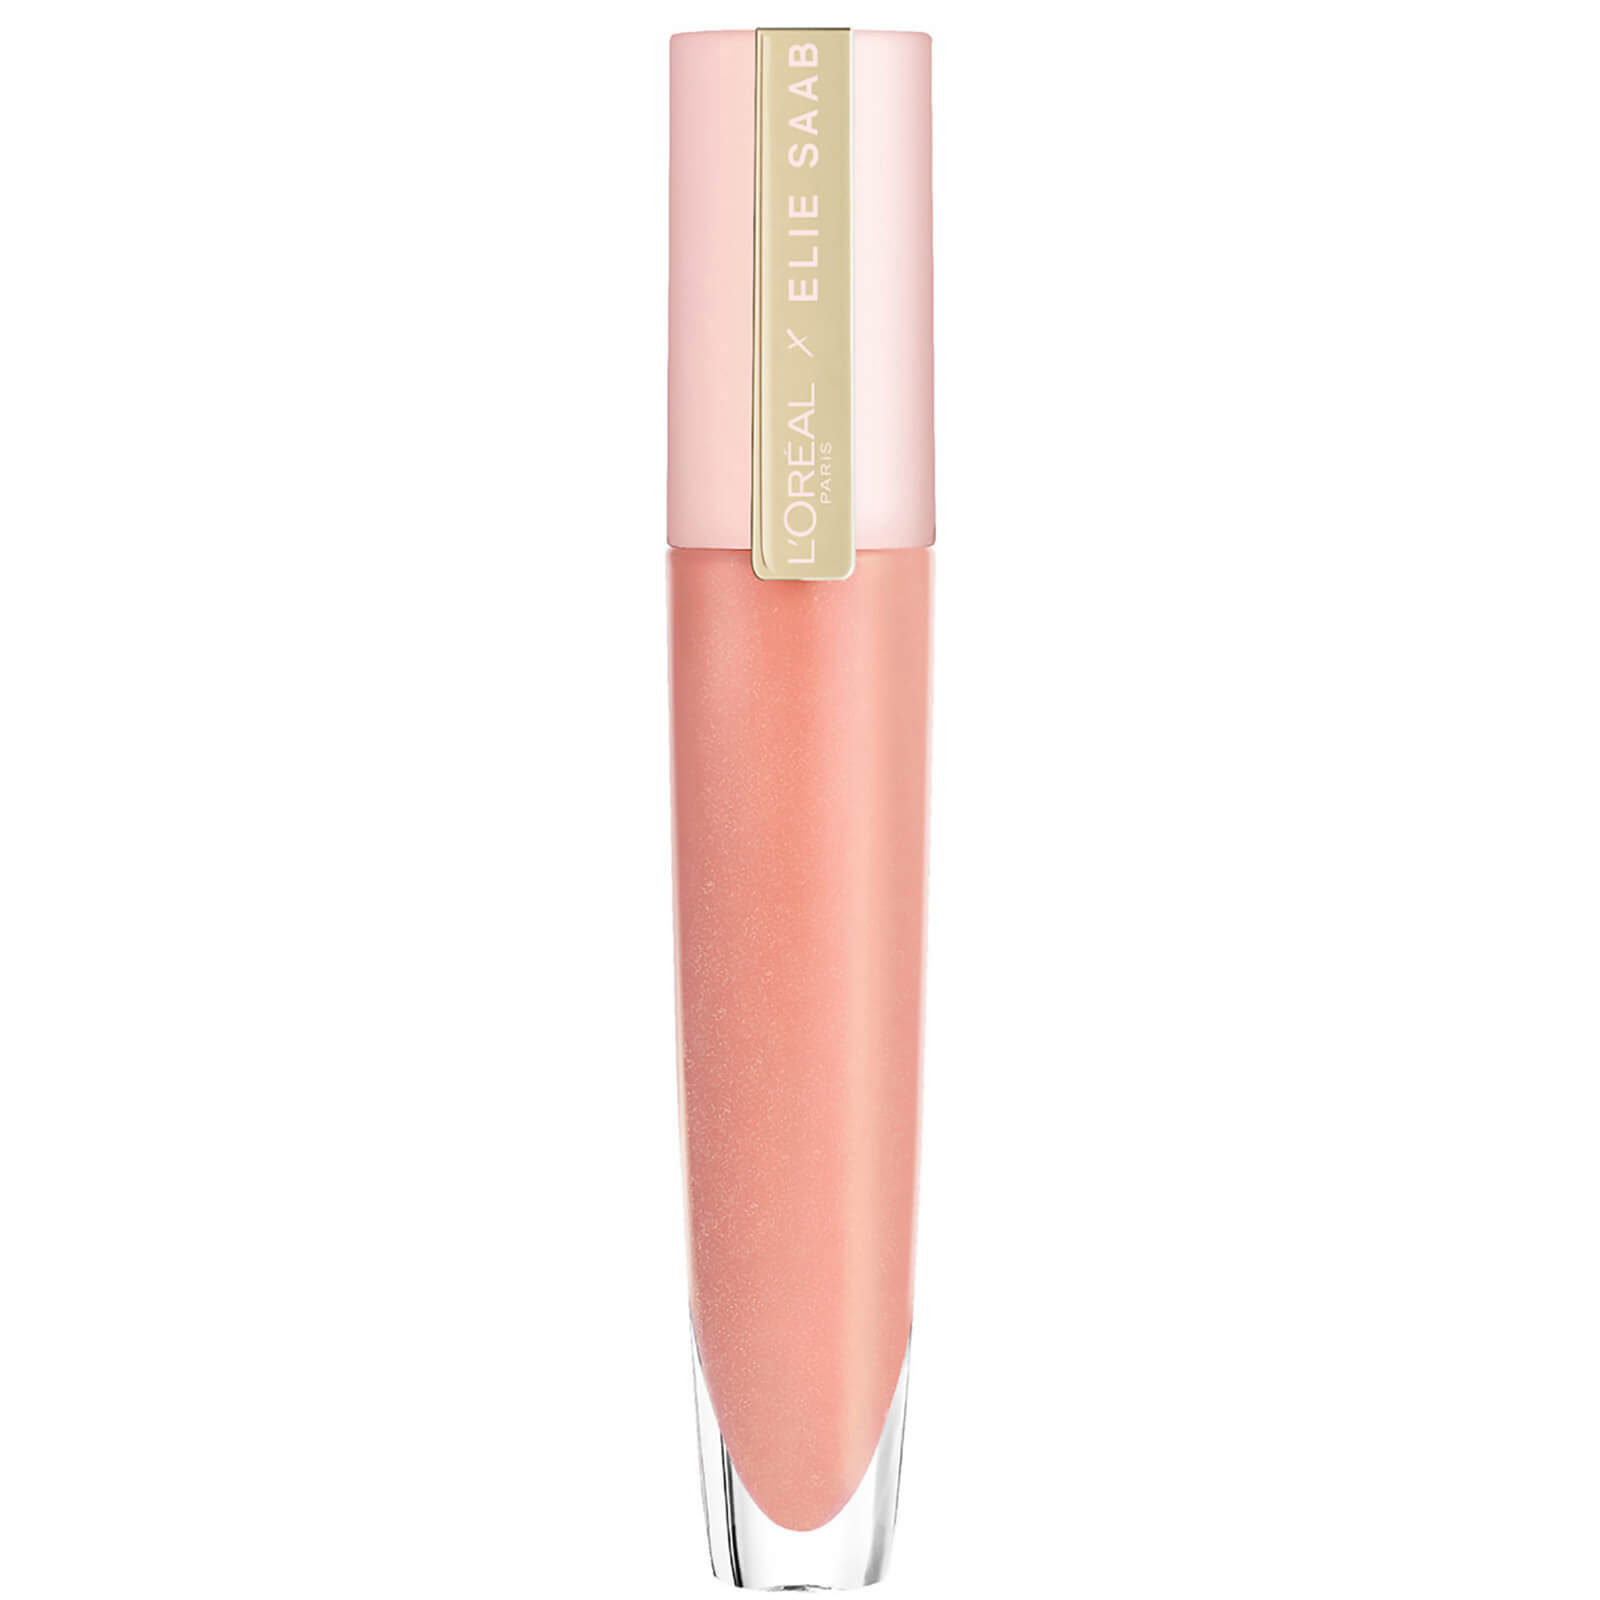 L'Oreal Paris X Elie Saab Bridal Collection Sheer Nude Lip Gloss 7ml (Various Shades) - 02 Amber Choc